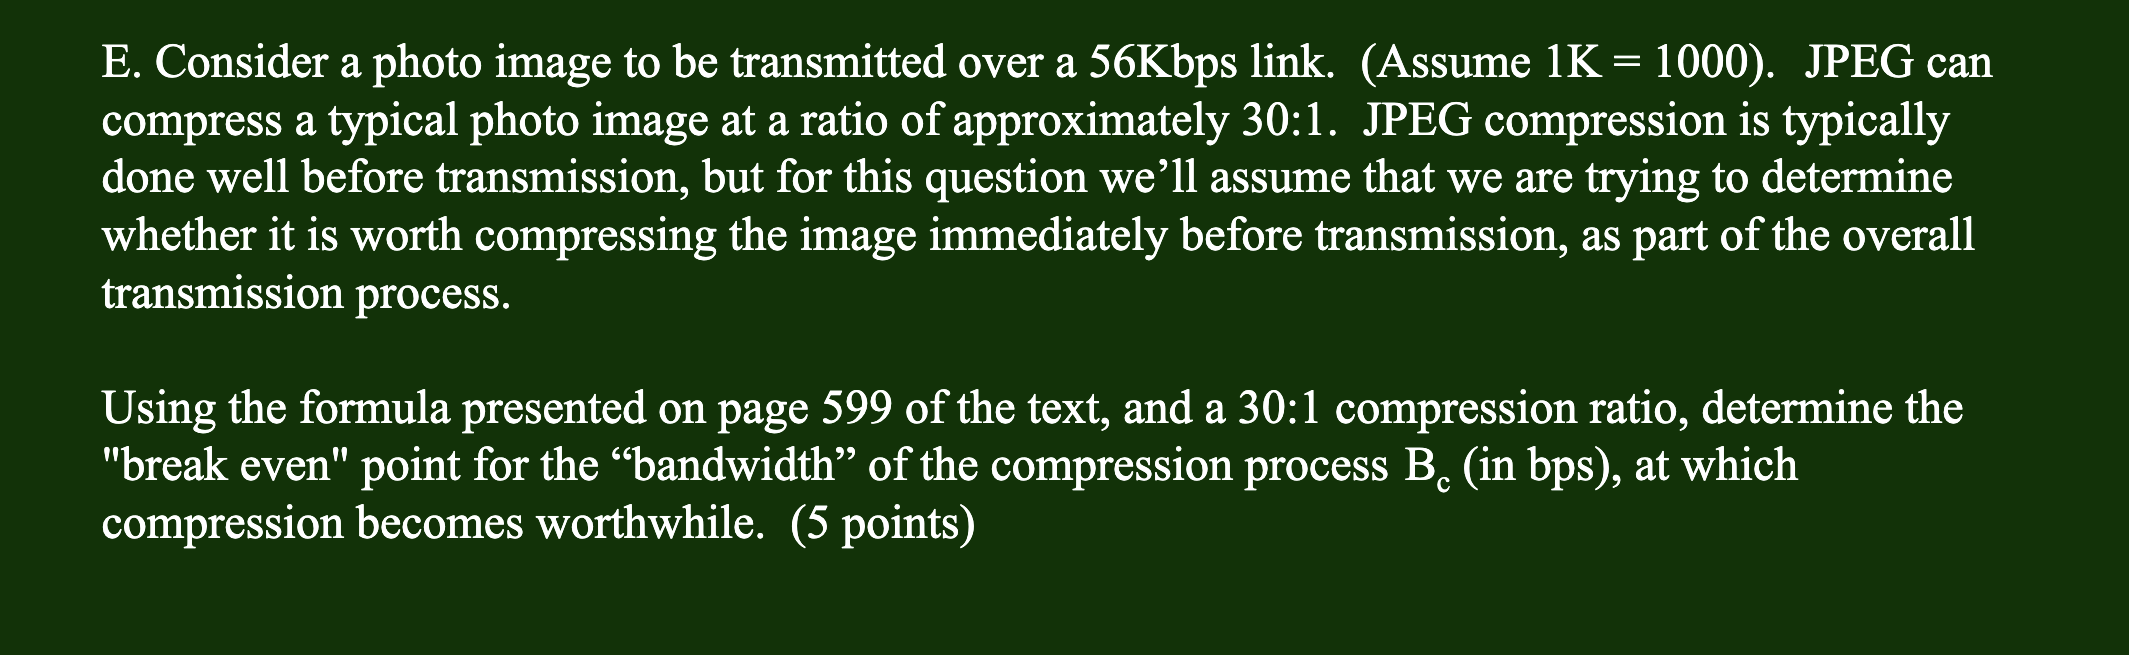 601091423916.jpg?q=40&auto=compress,format&ar=1:1&w=1400